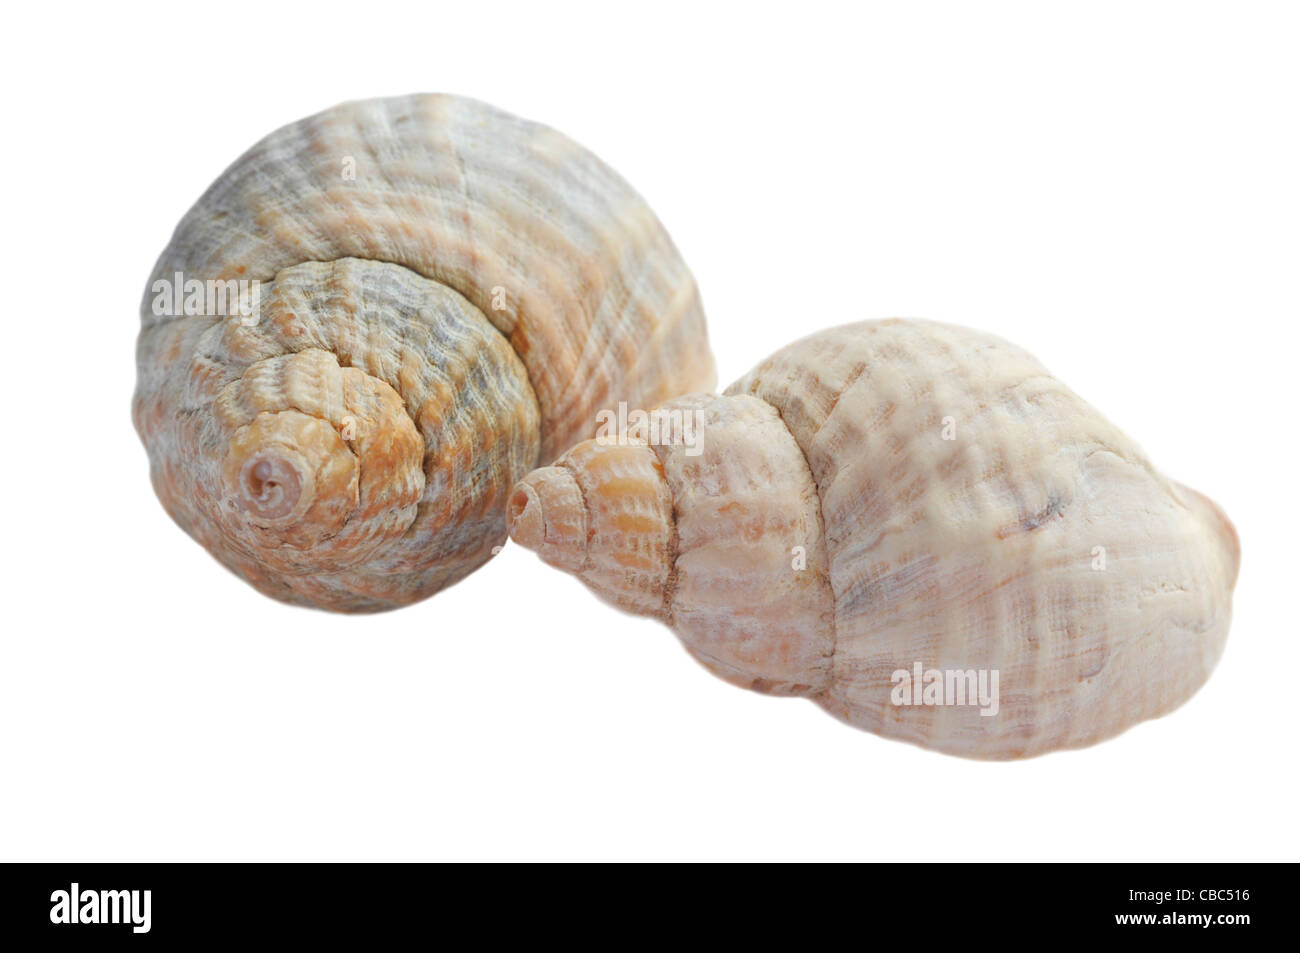 Netted Dog Whelk Shells on White Background Stock Photo